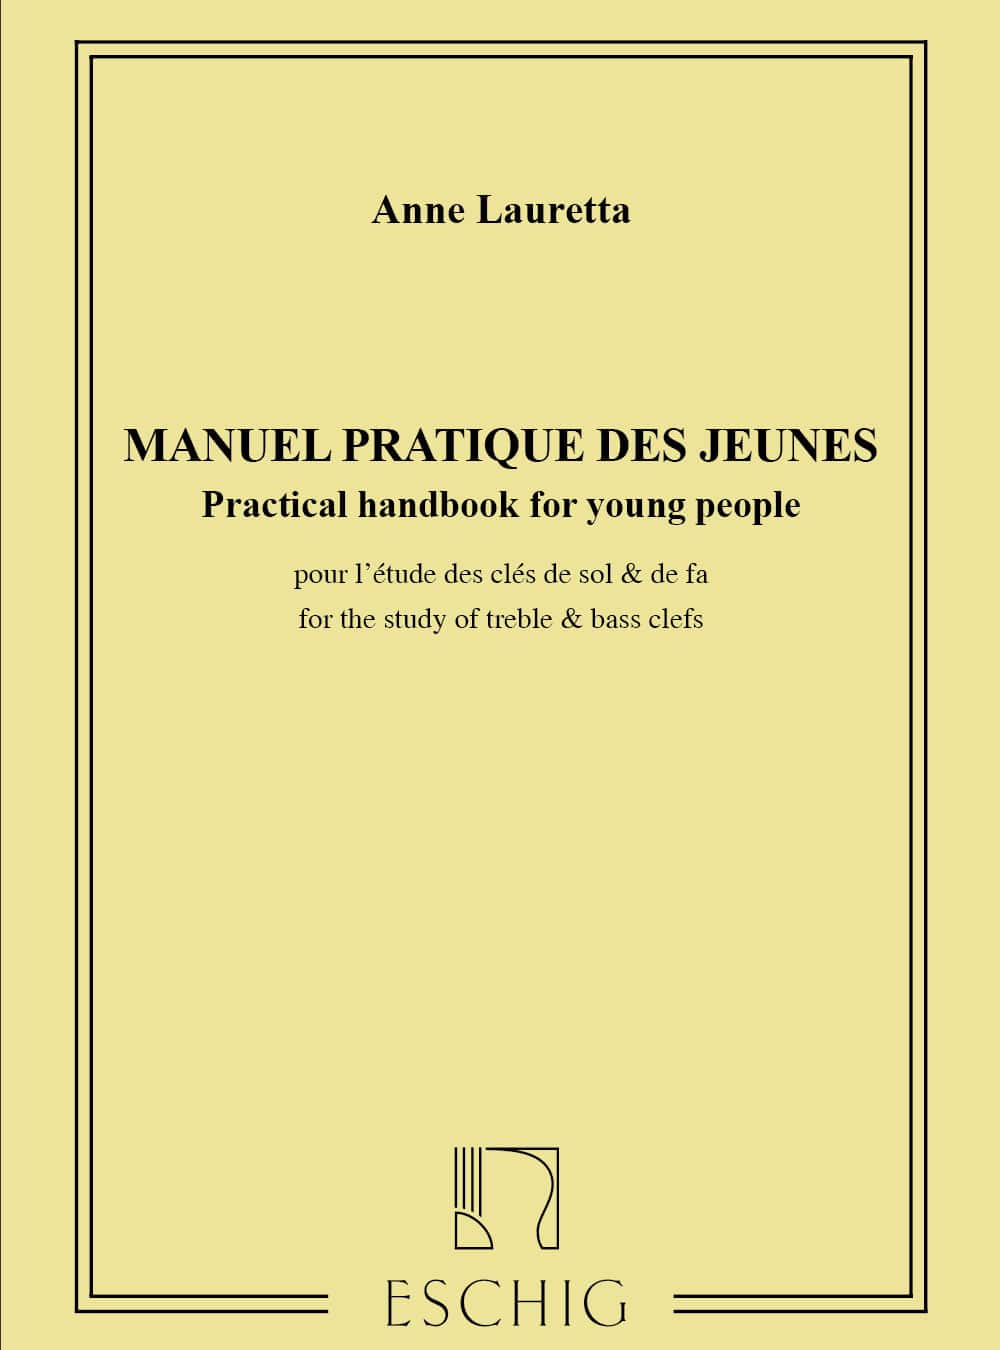 EDITION MAX ESCHIG LAURETTA A. - MANUEL PRATIQUE DES JEUNES